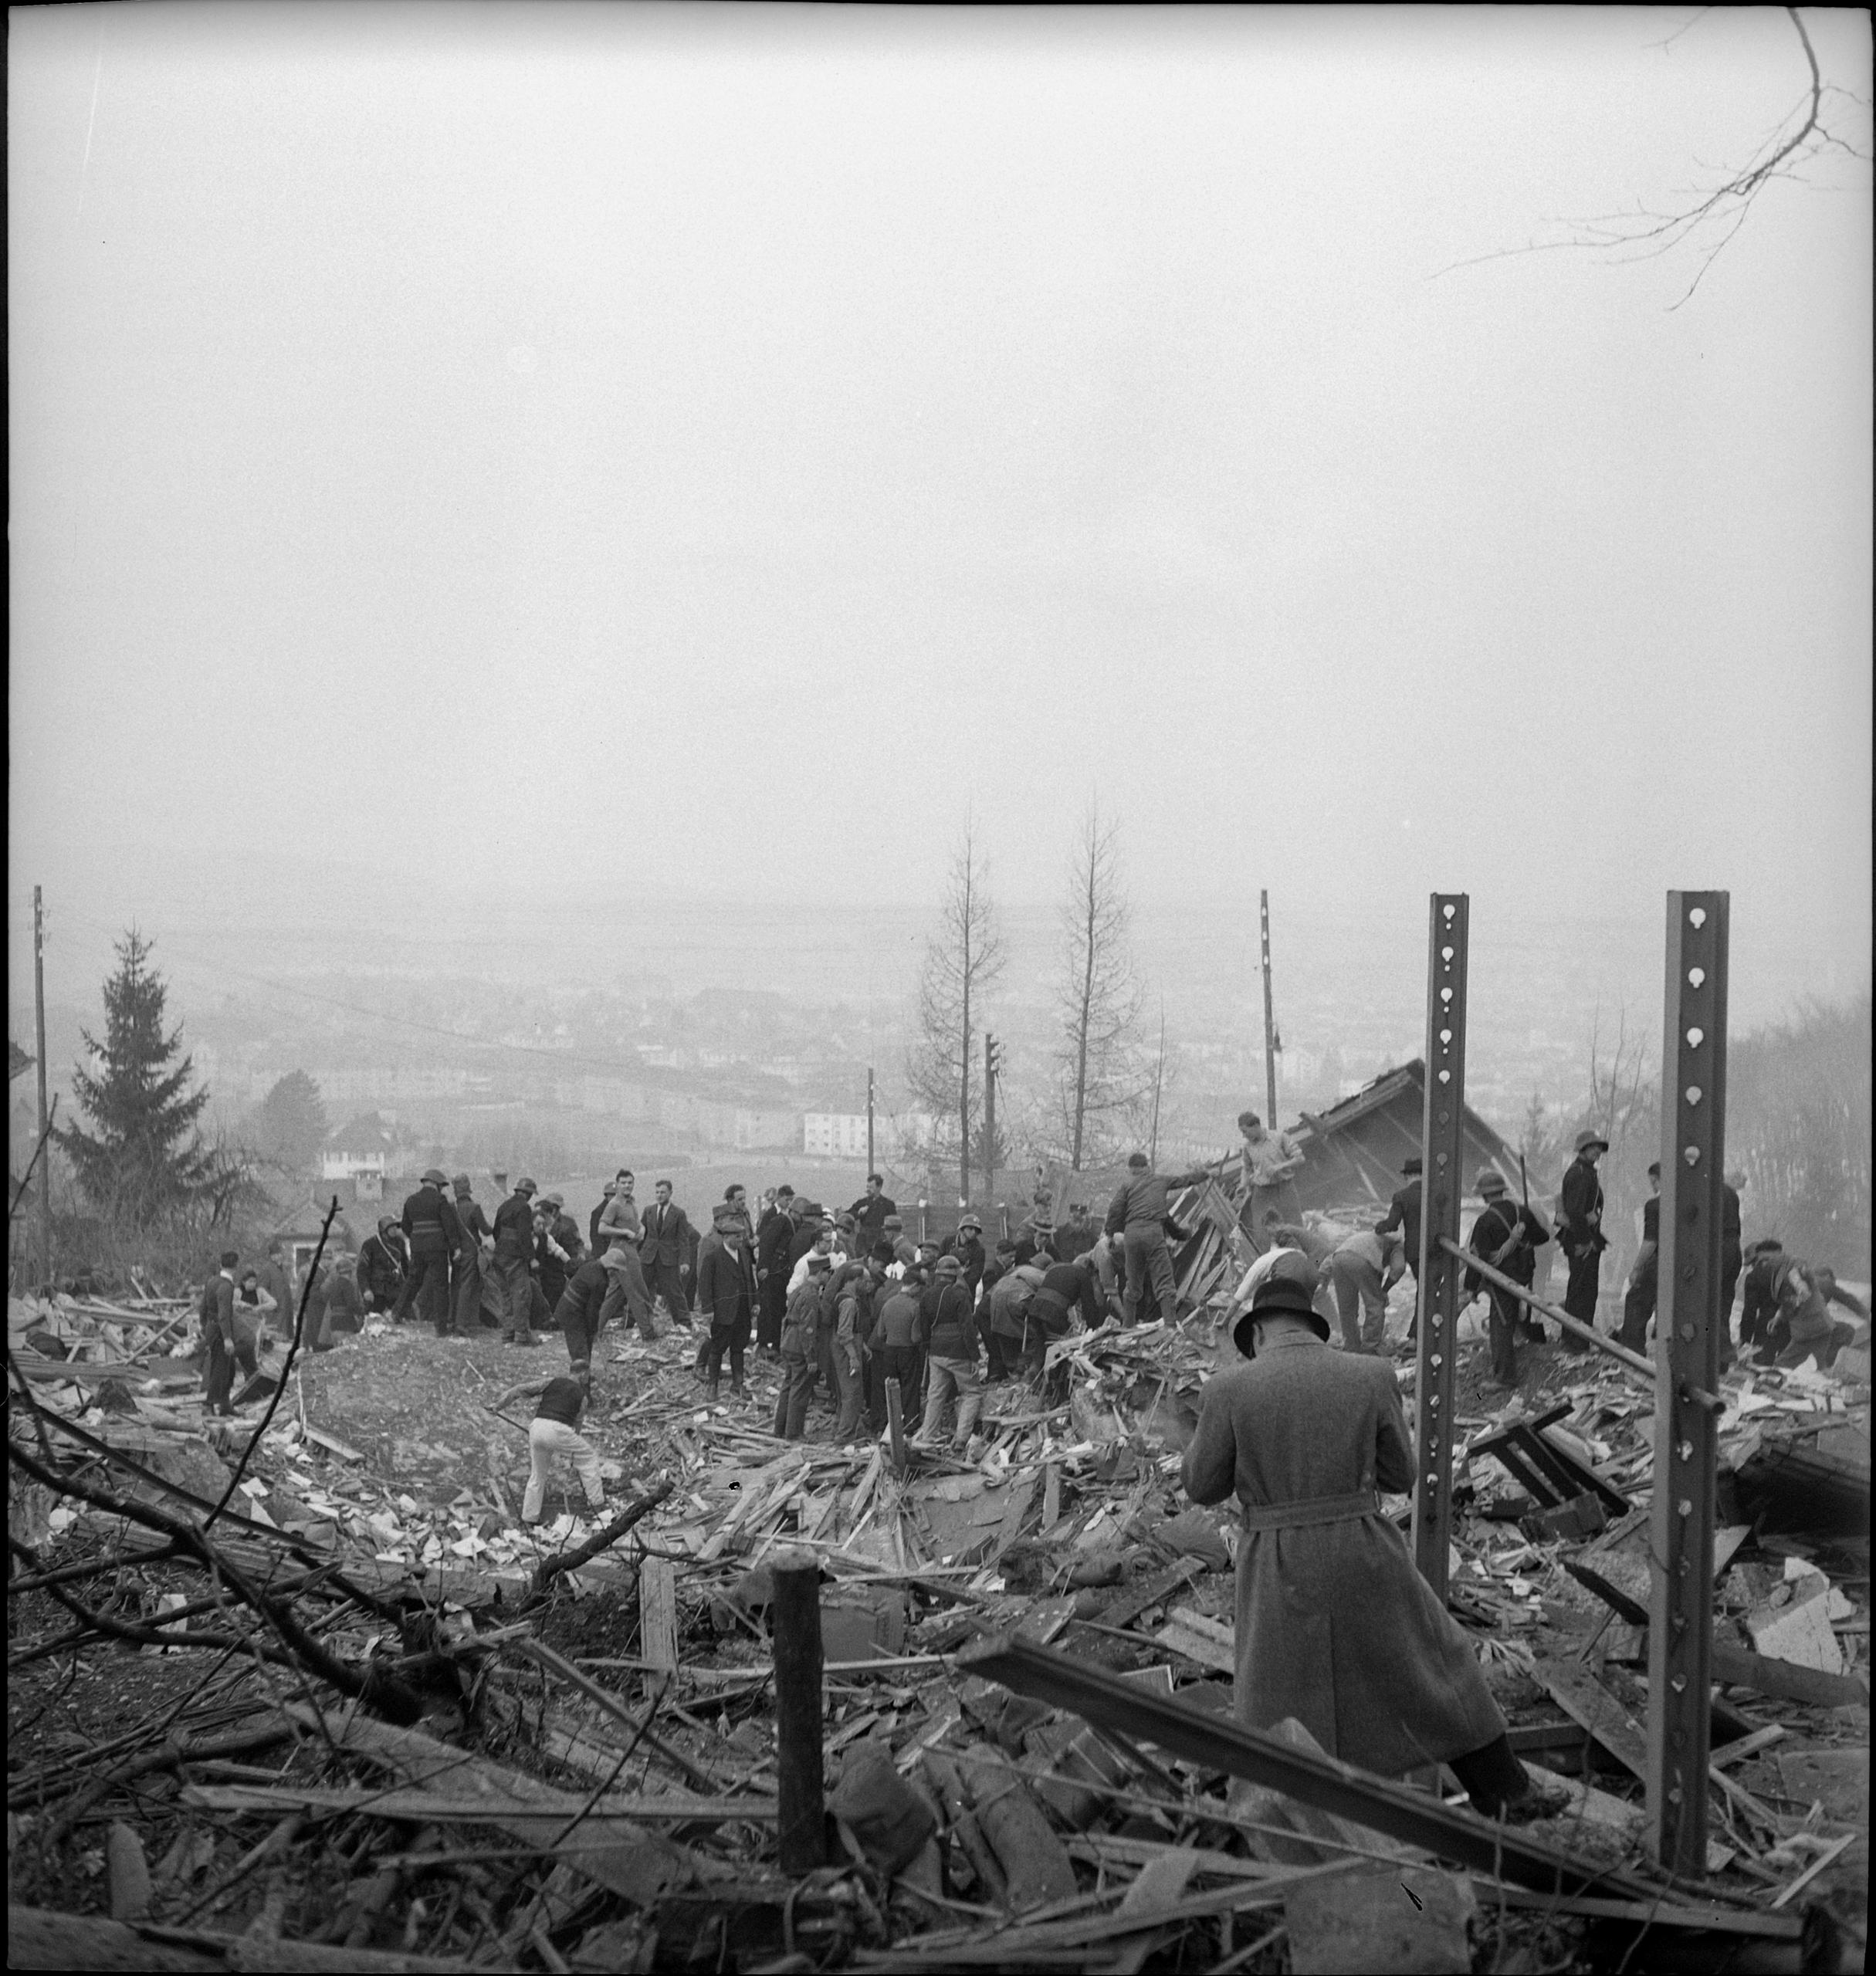 Следы войны в Швейцарии: последствия ошибочной бомбардирови в районе Цюриха.